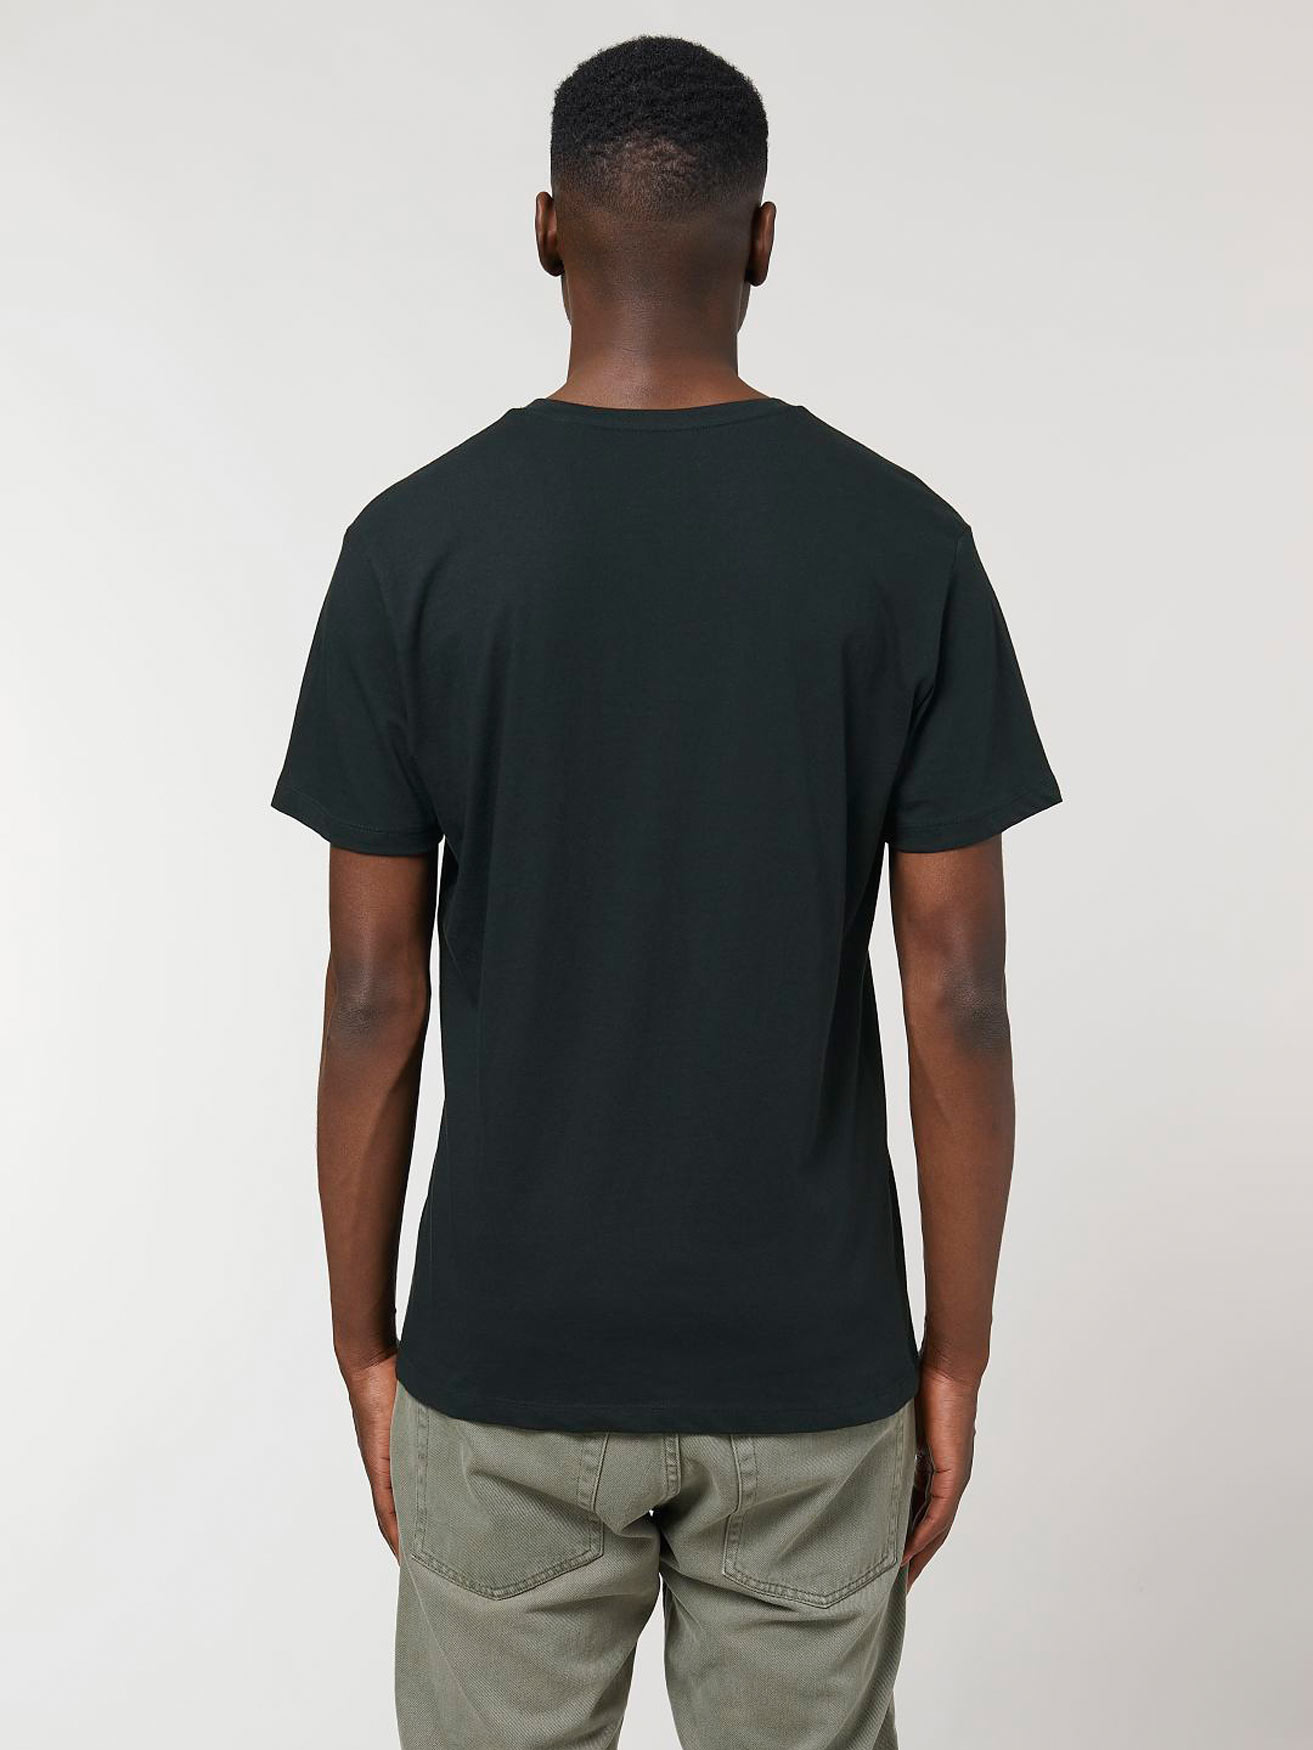 Schwarzes Basic T-Shirt mit V-Ausschnitt - ökofair